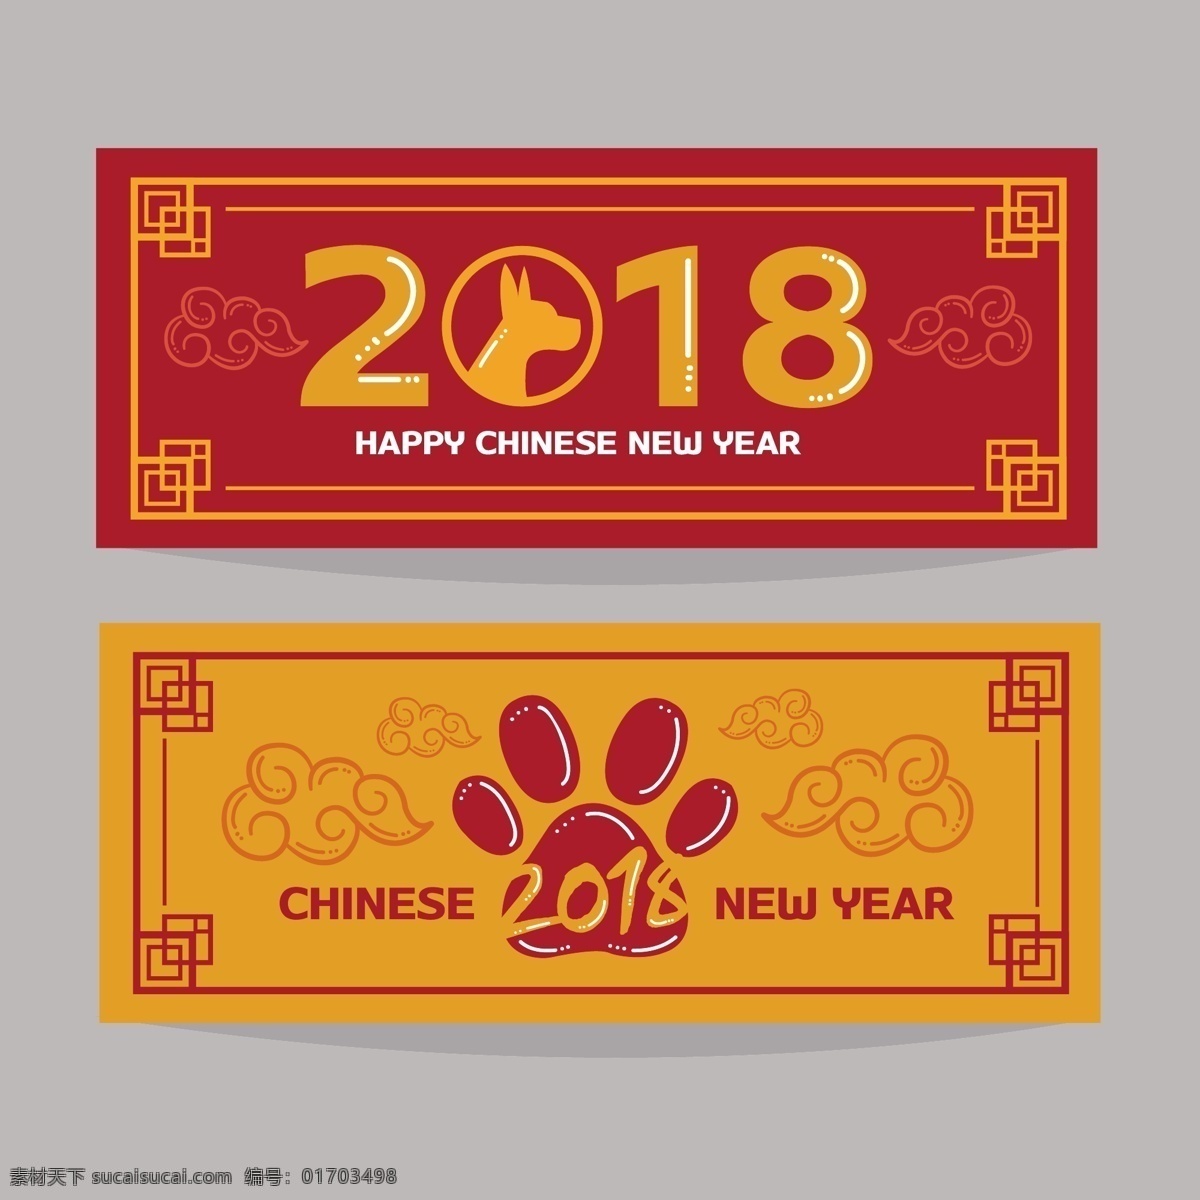 红色狗年海报 2018新年 新年快乐 新年贺卡 新年海报 新年背景 喜迎新年 迎新年 新年活动 贺新年 圣诞新年